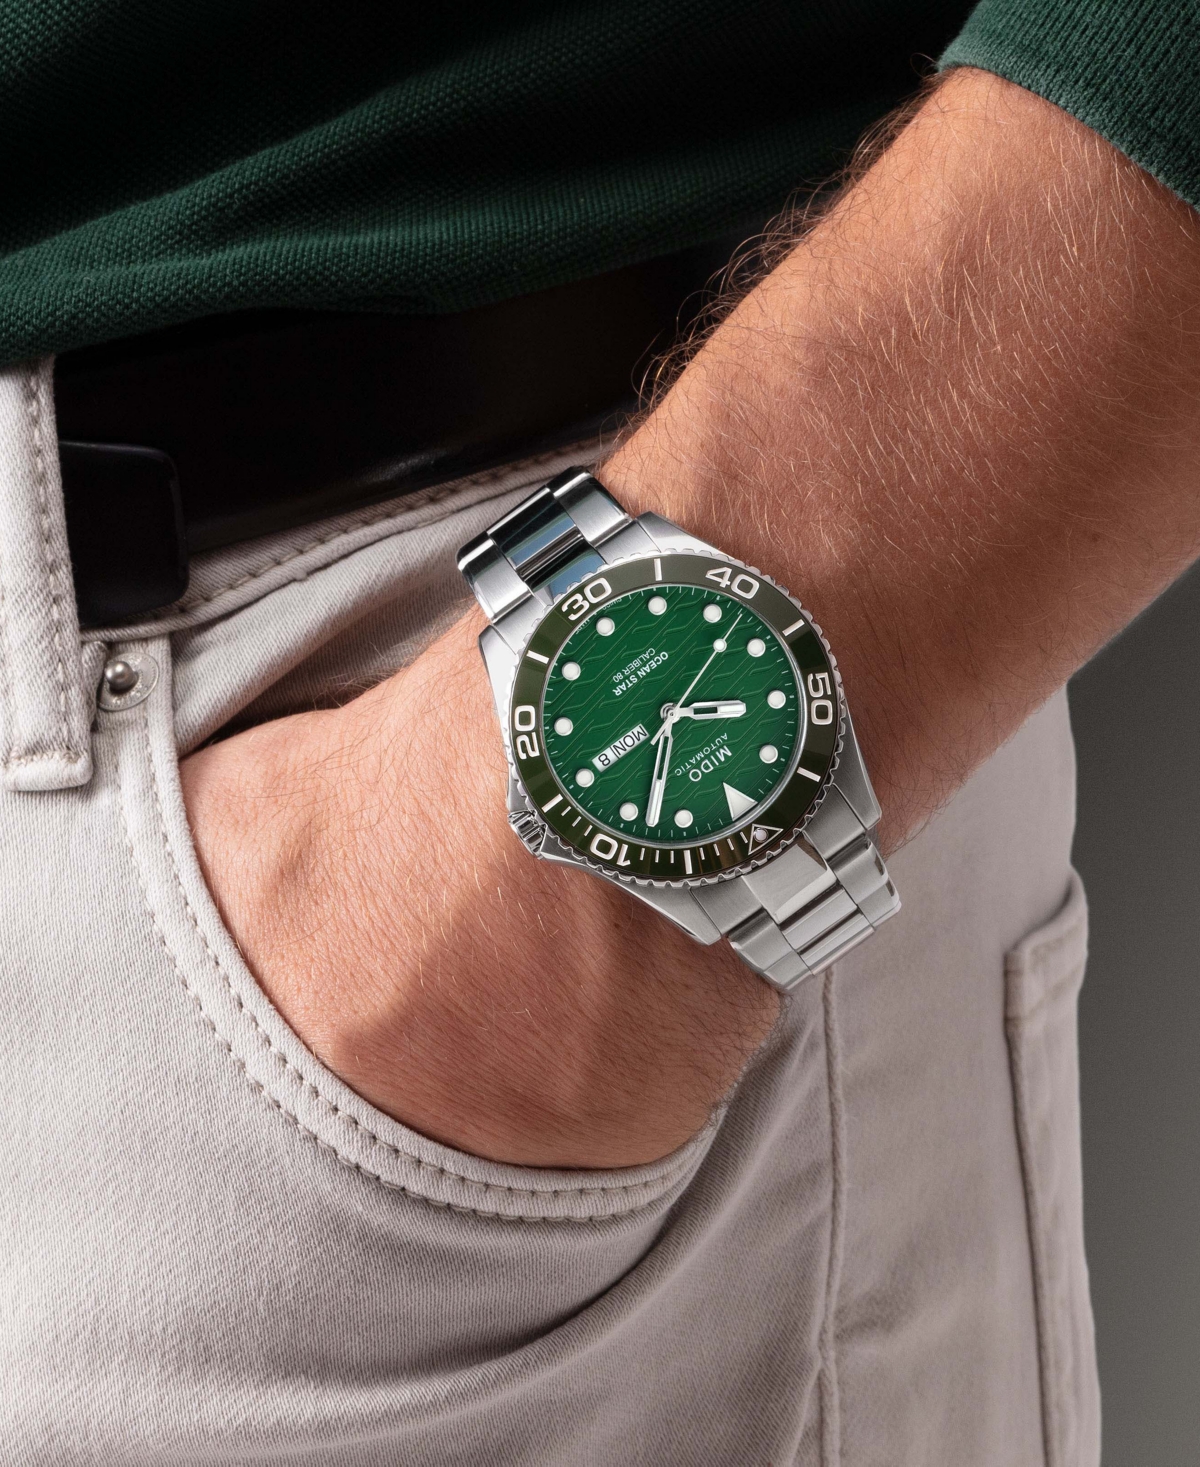 Shop Mido Men's Swiss Automatic Ocean Star Stainless Steel Bracelet Watch 43mm In Silver